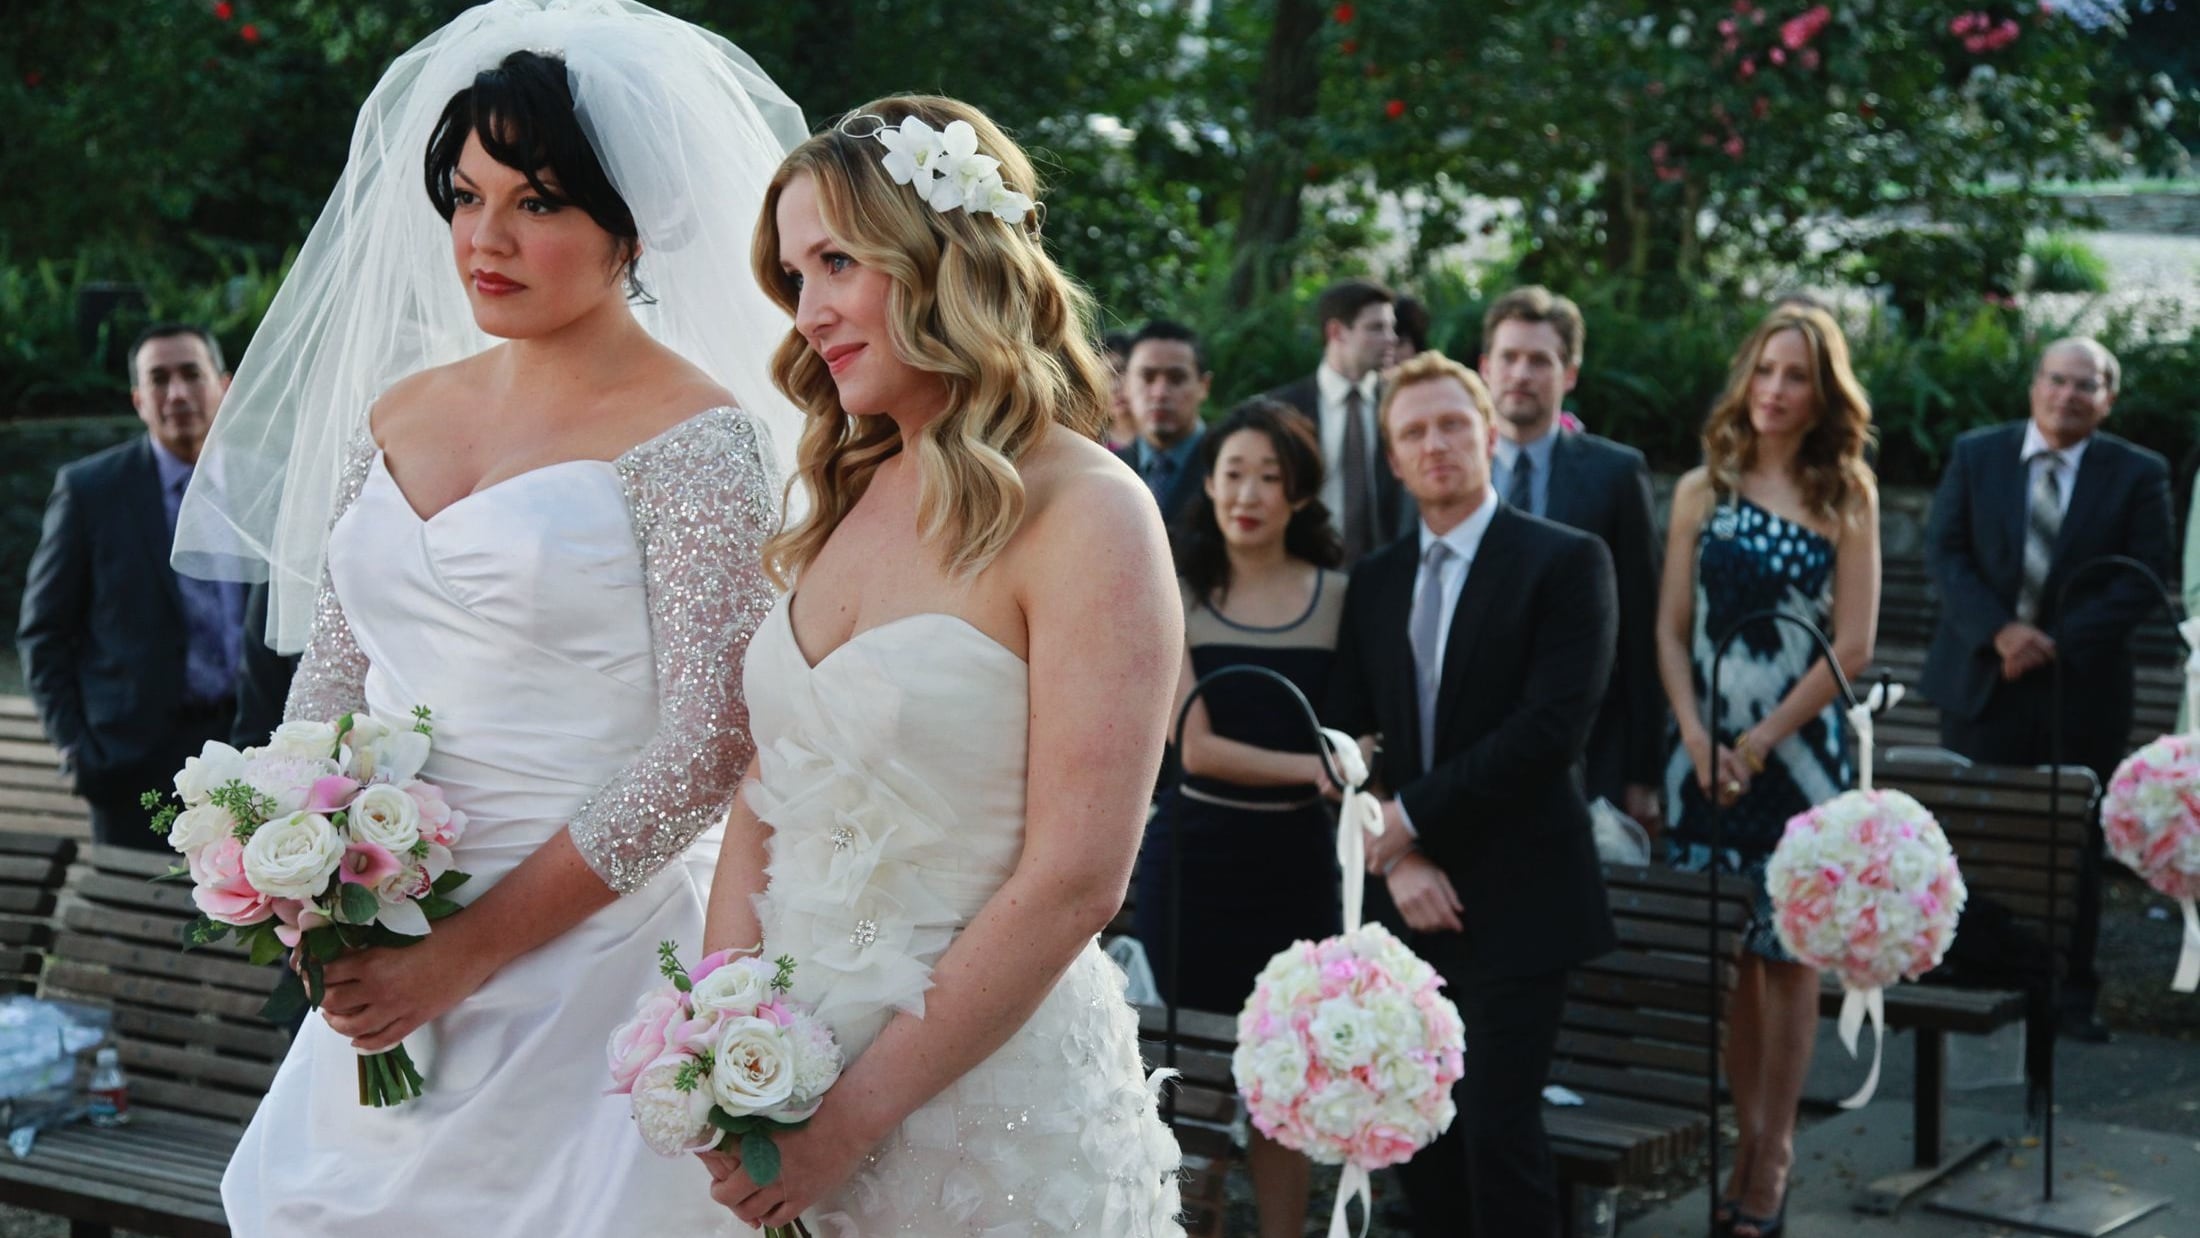 Grey's Anatomy - Season 7 Episode 20 : White Wedding